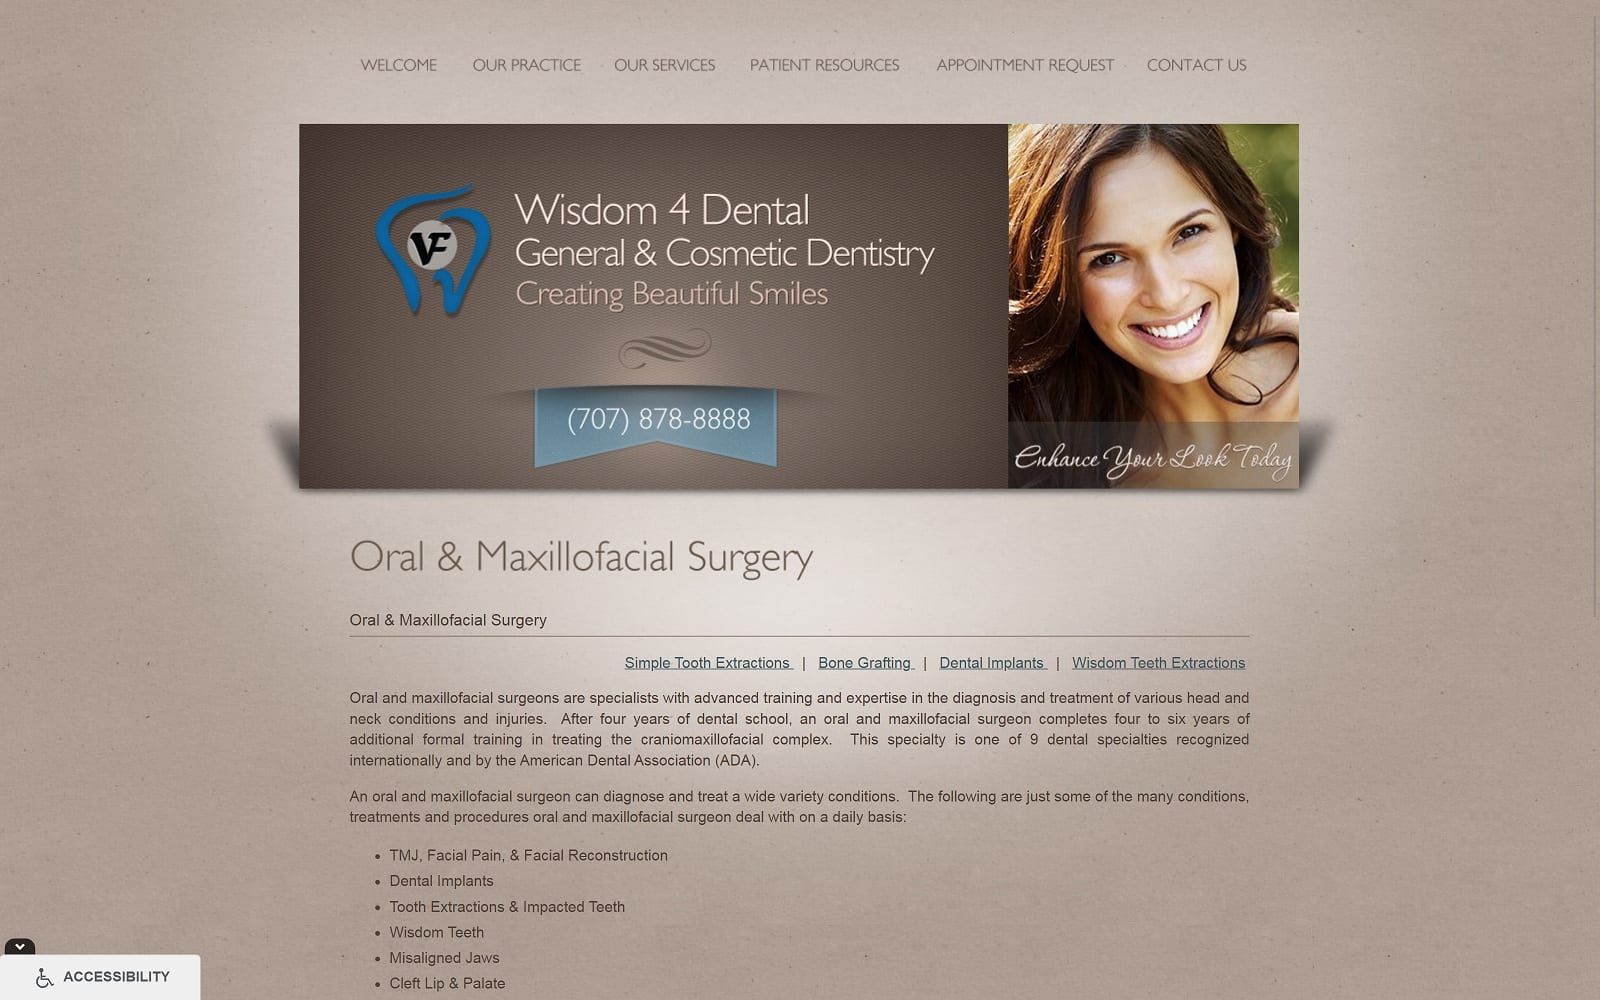 The screenshot of wisdom 4 dental wisdom4dental. Com website